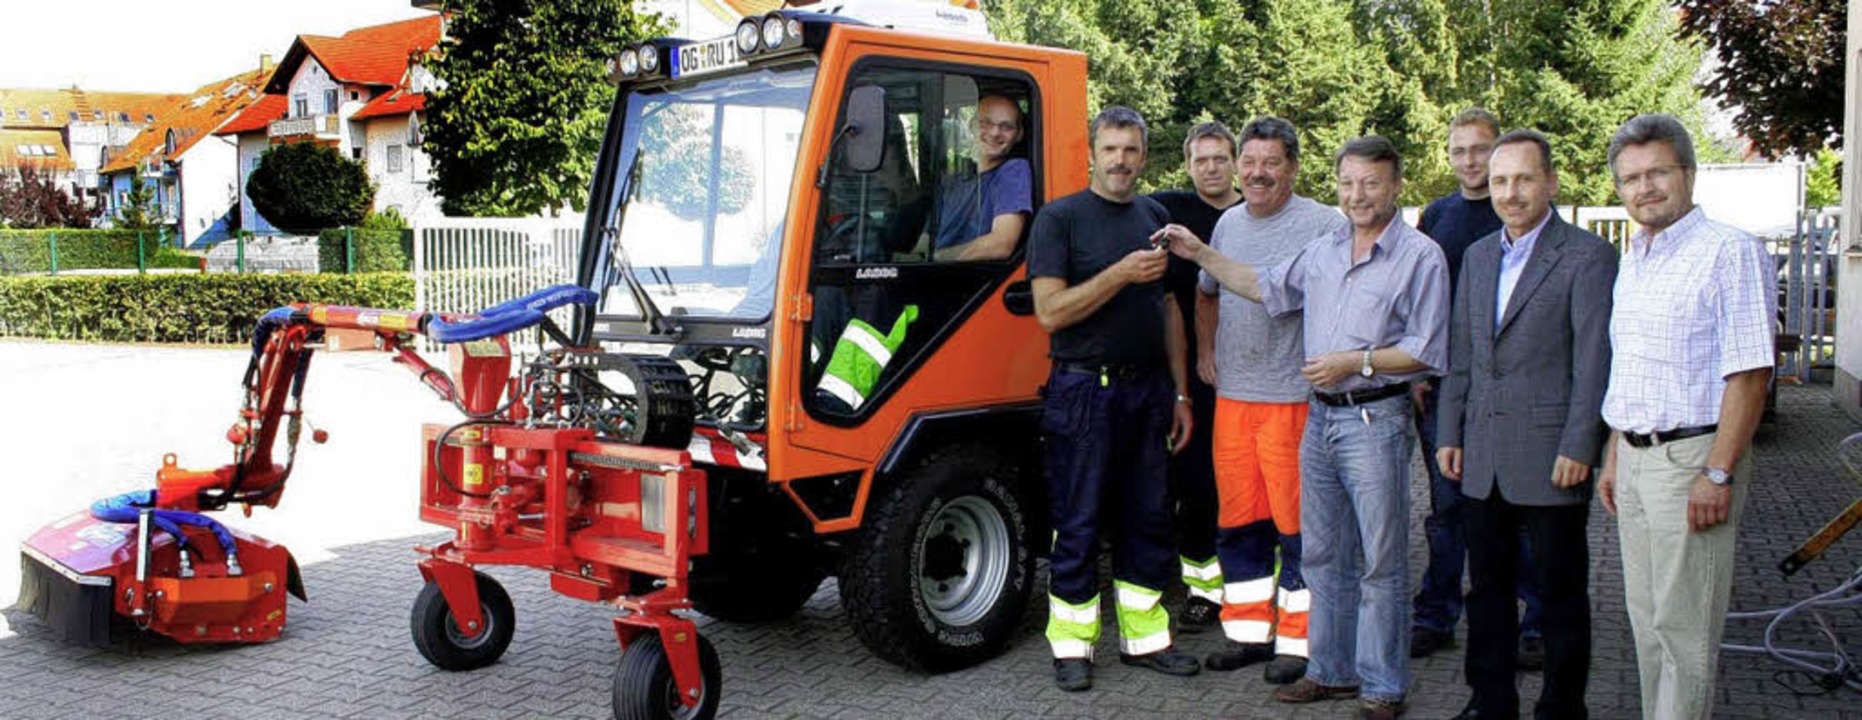 Bauhofarbeiter im Glück &#8211; ein neues Fahrzeug erleichtert viele Arbeiten.   | Foto: ulrike hiller